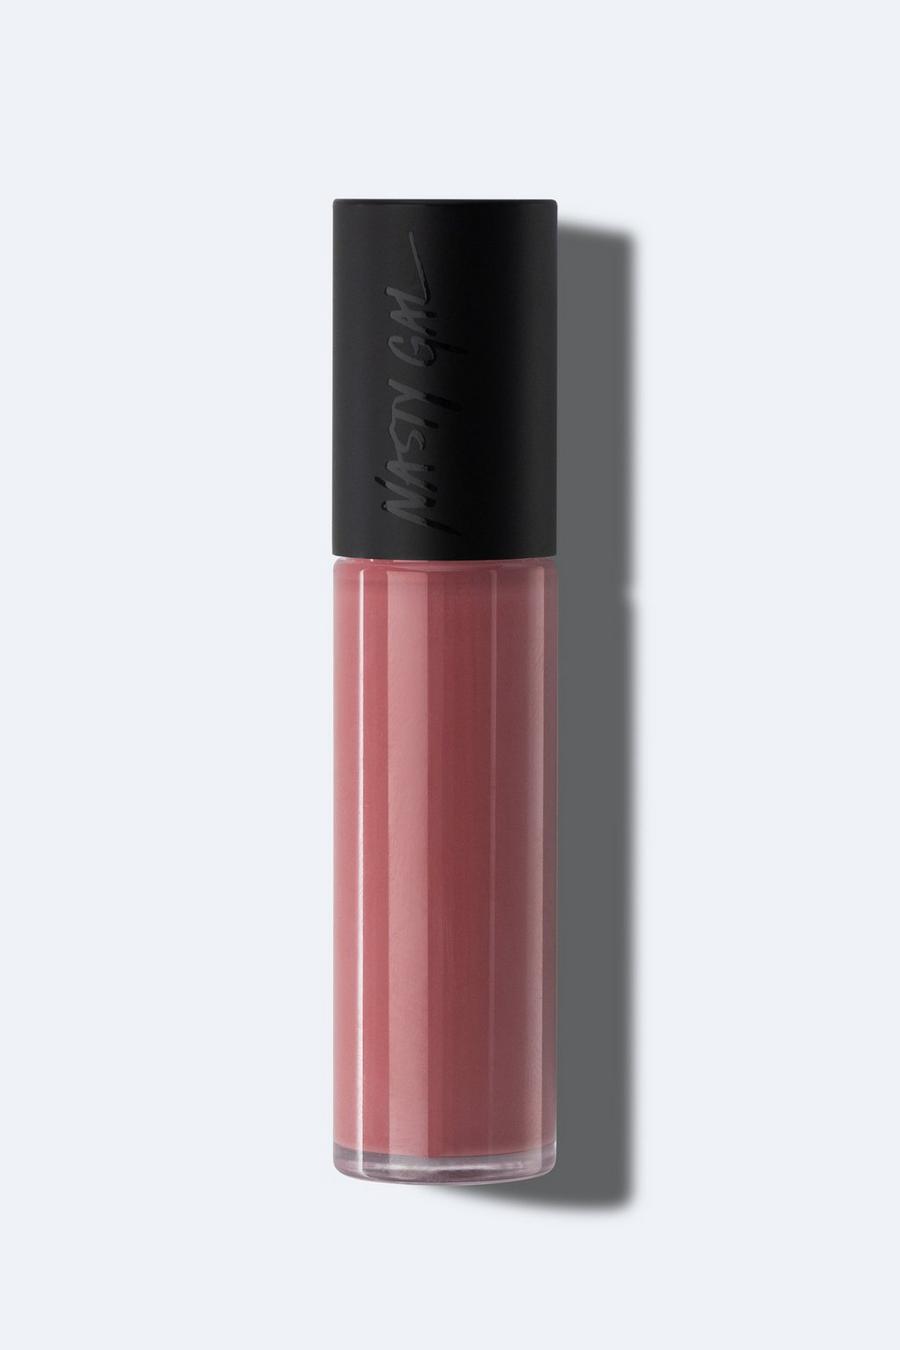 Sheer pink Nasty Gal Beauty Lipgloss